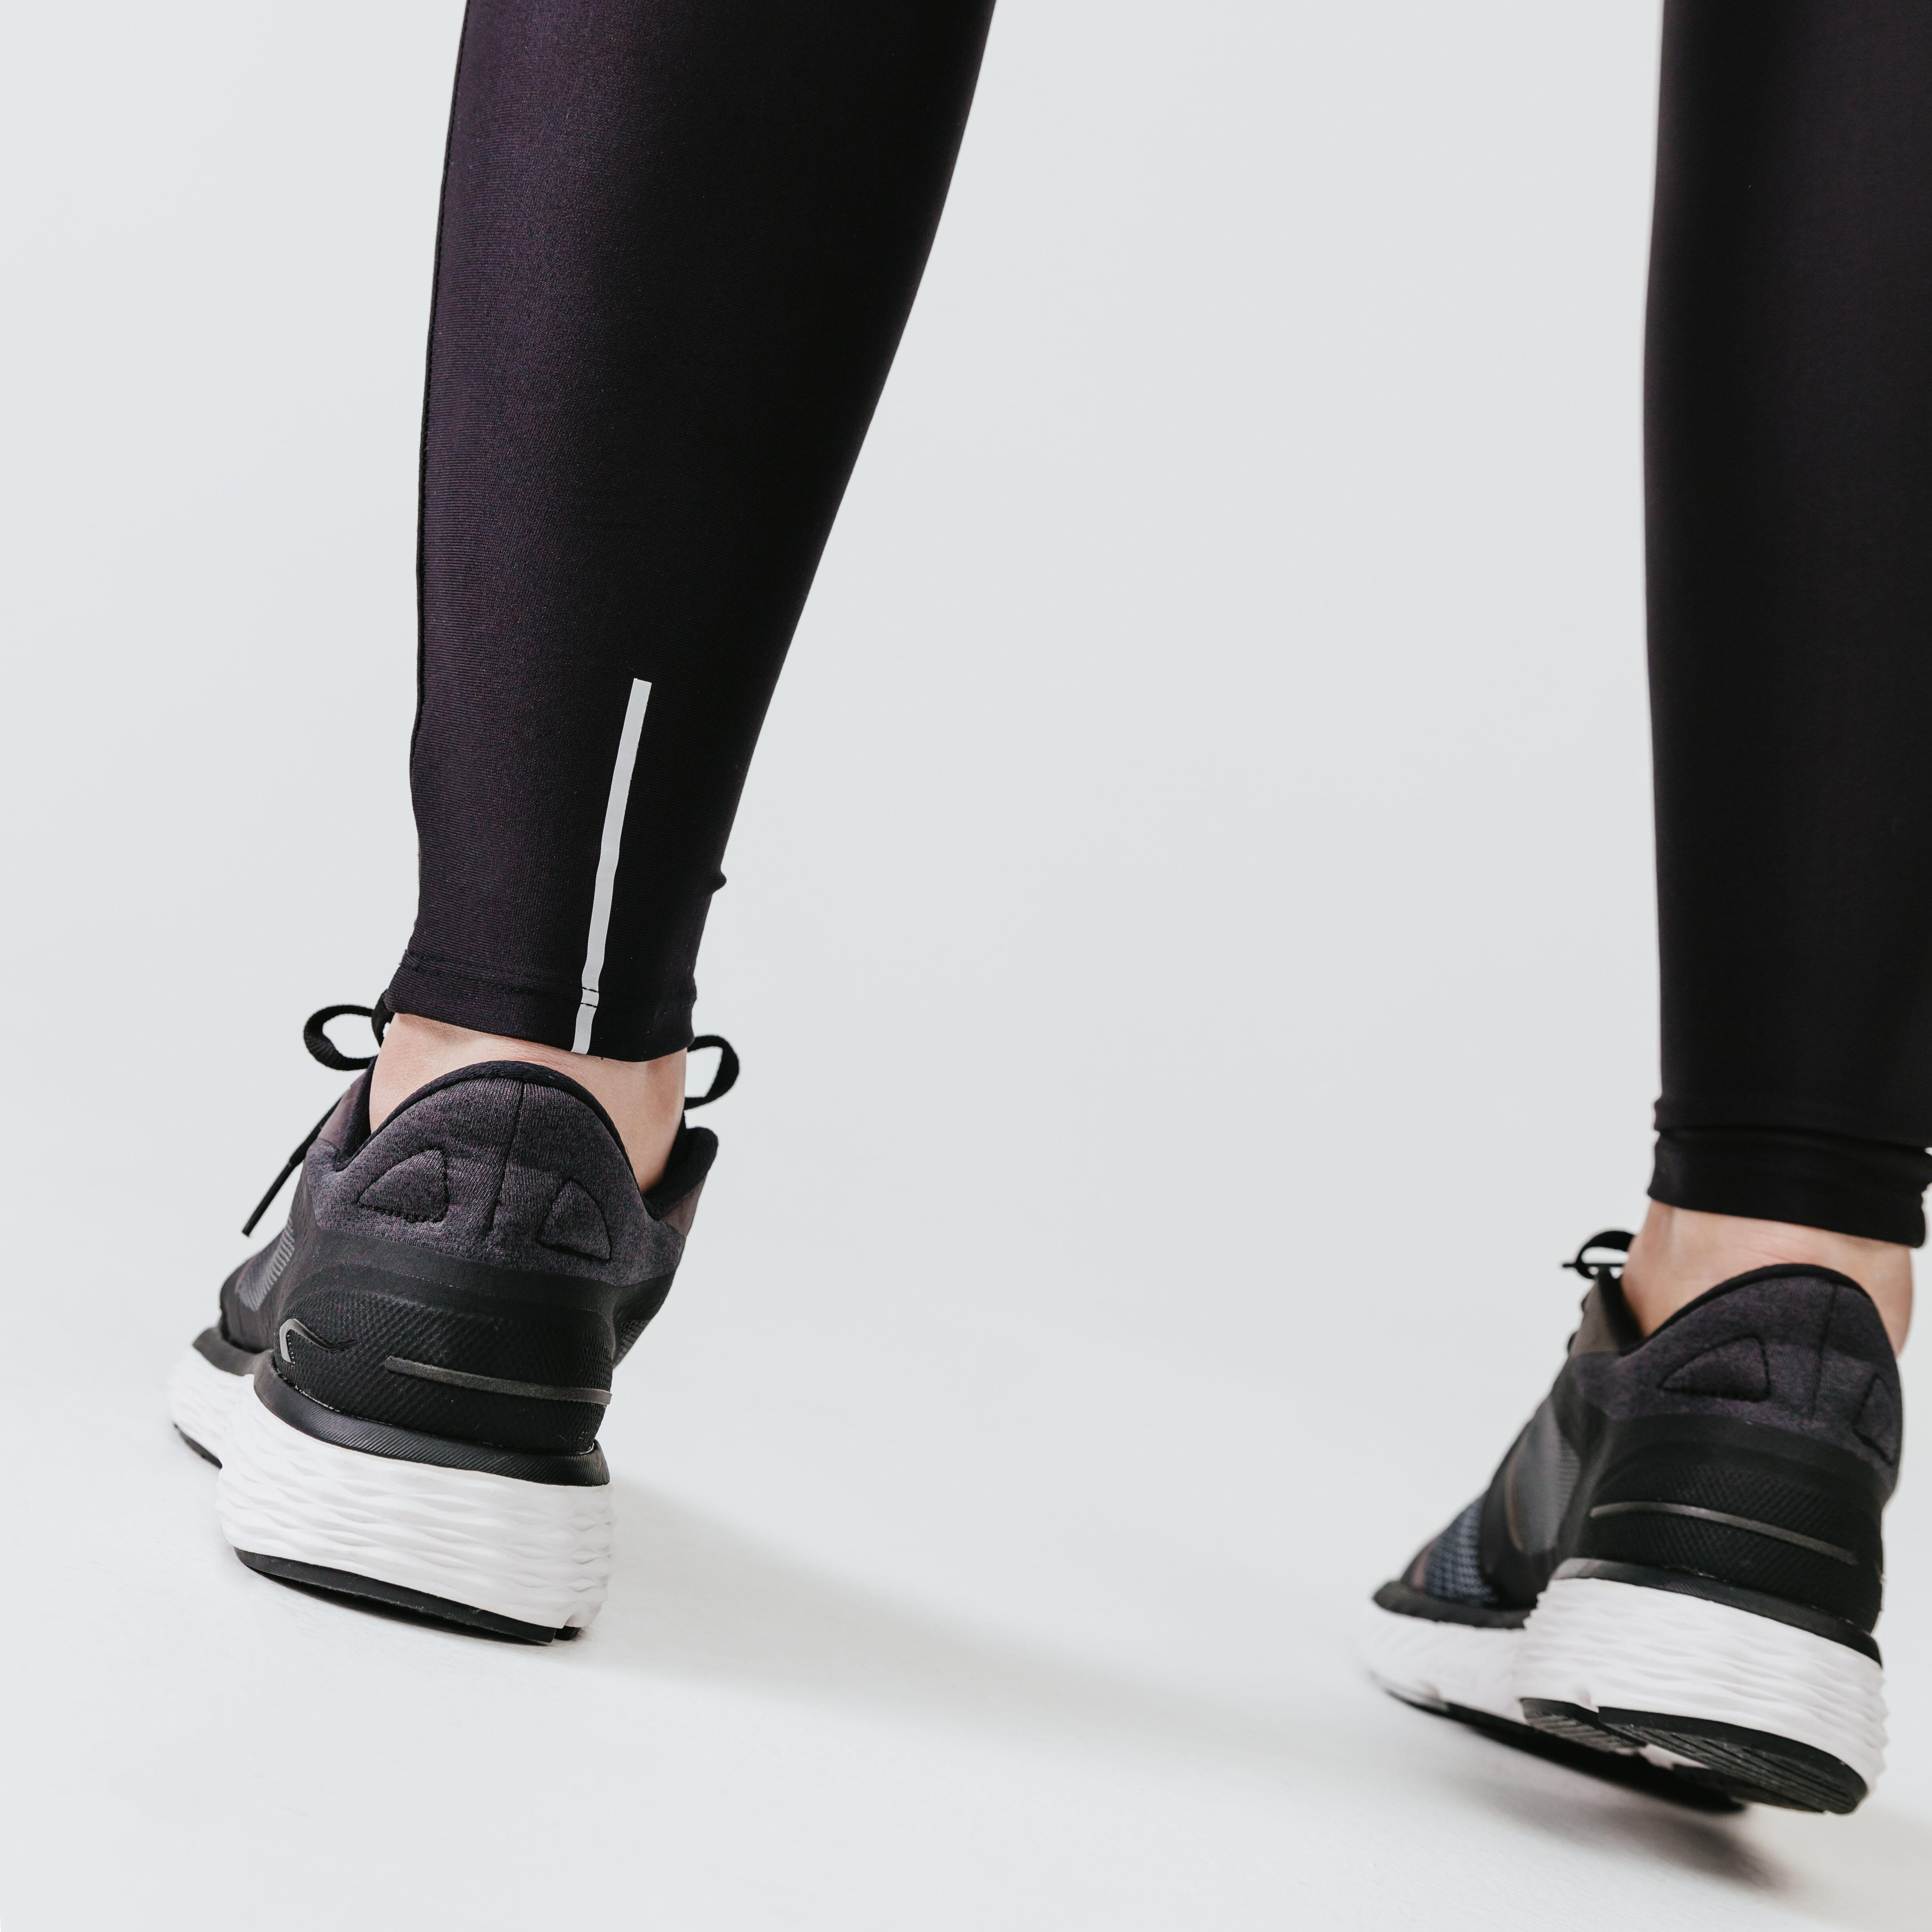 Women's long running leggings Dry - black - Decathlon